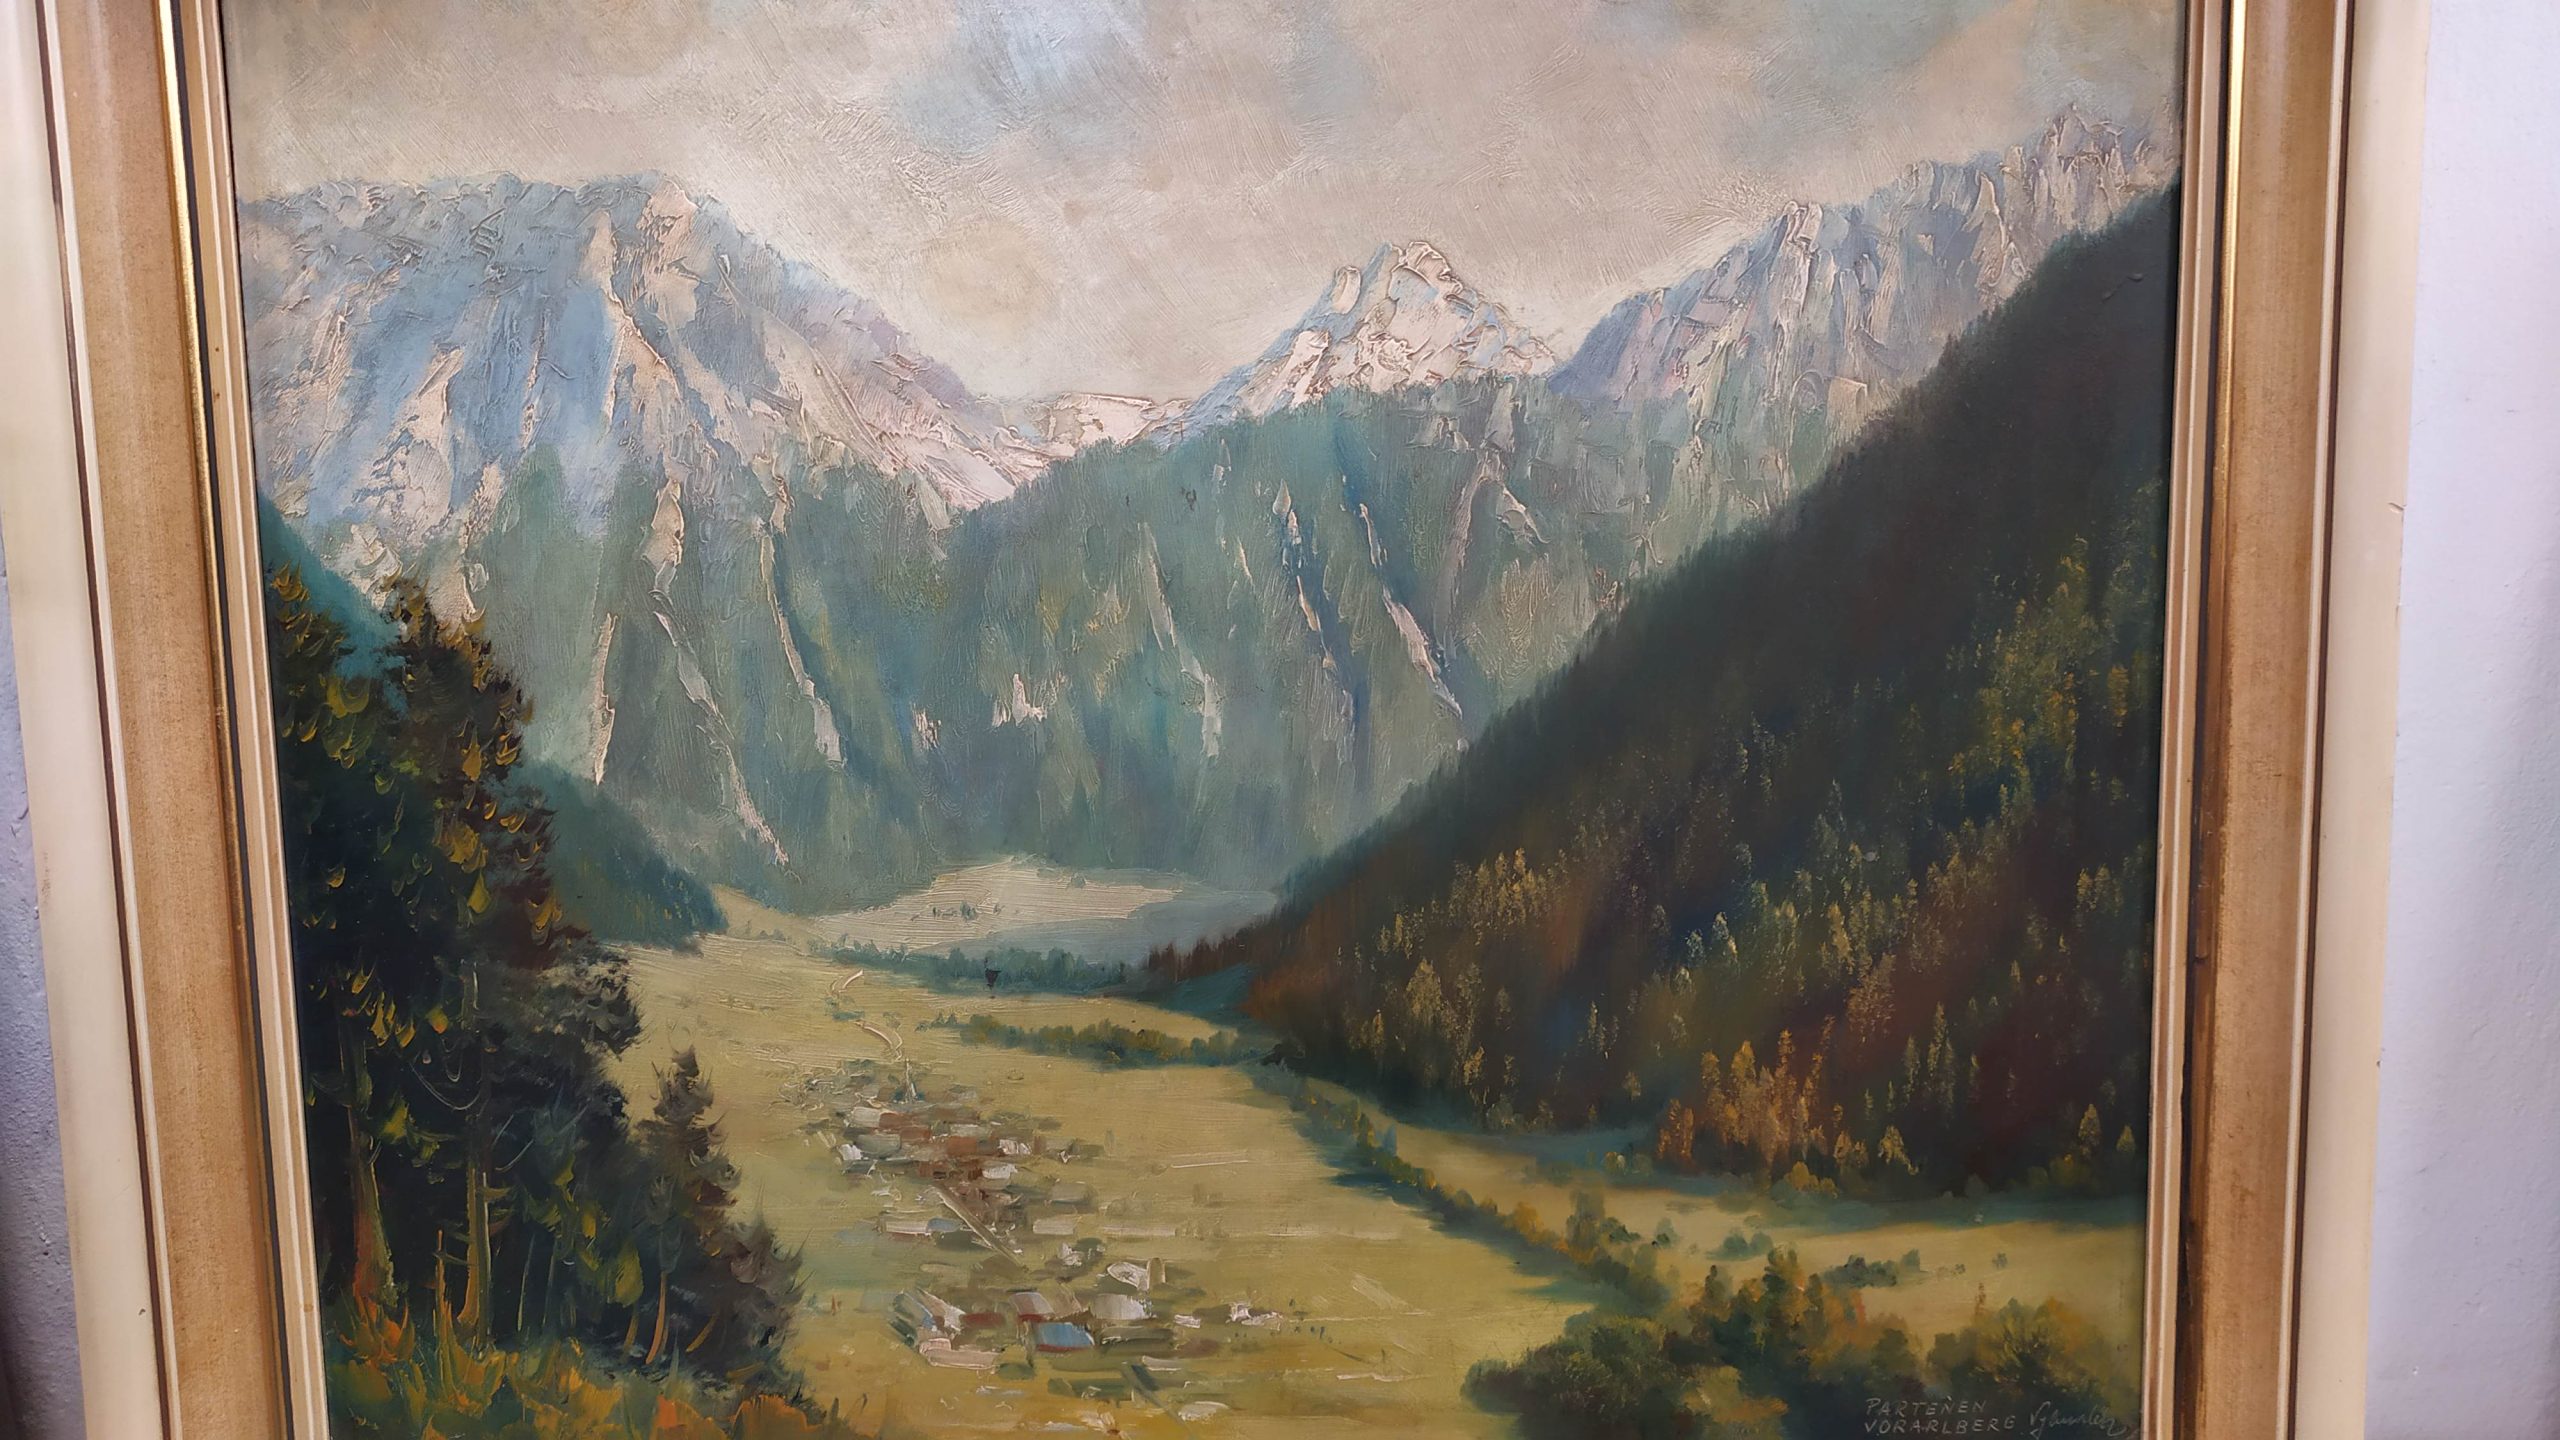 Gemälde Partenen Vorarlberg